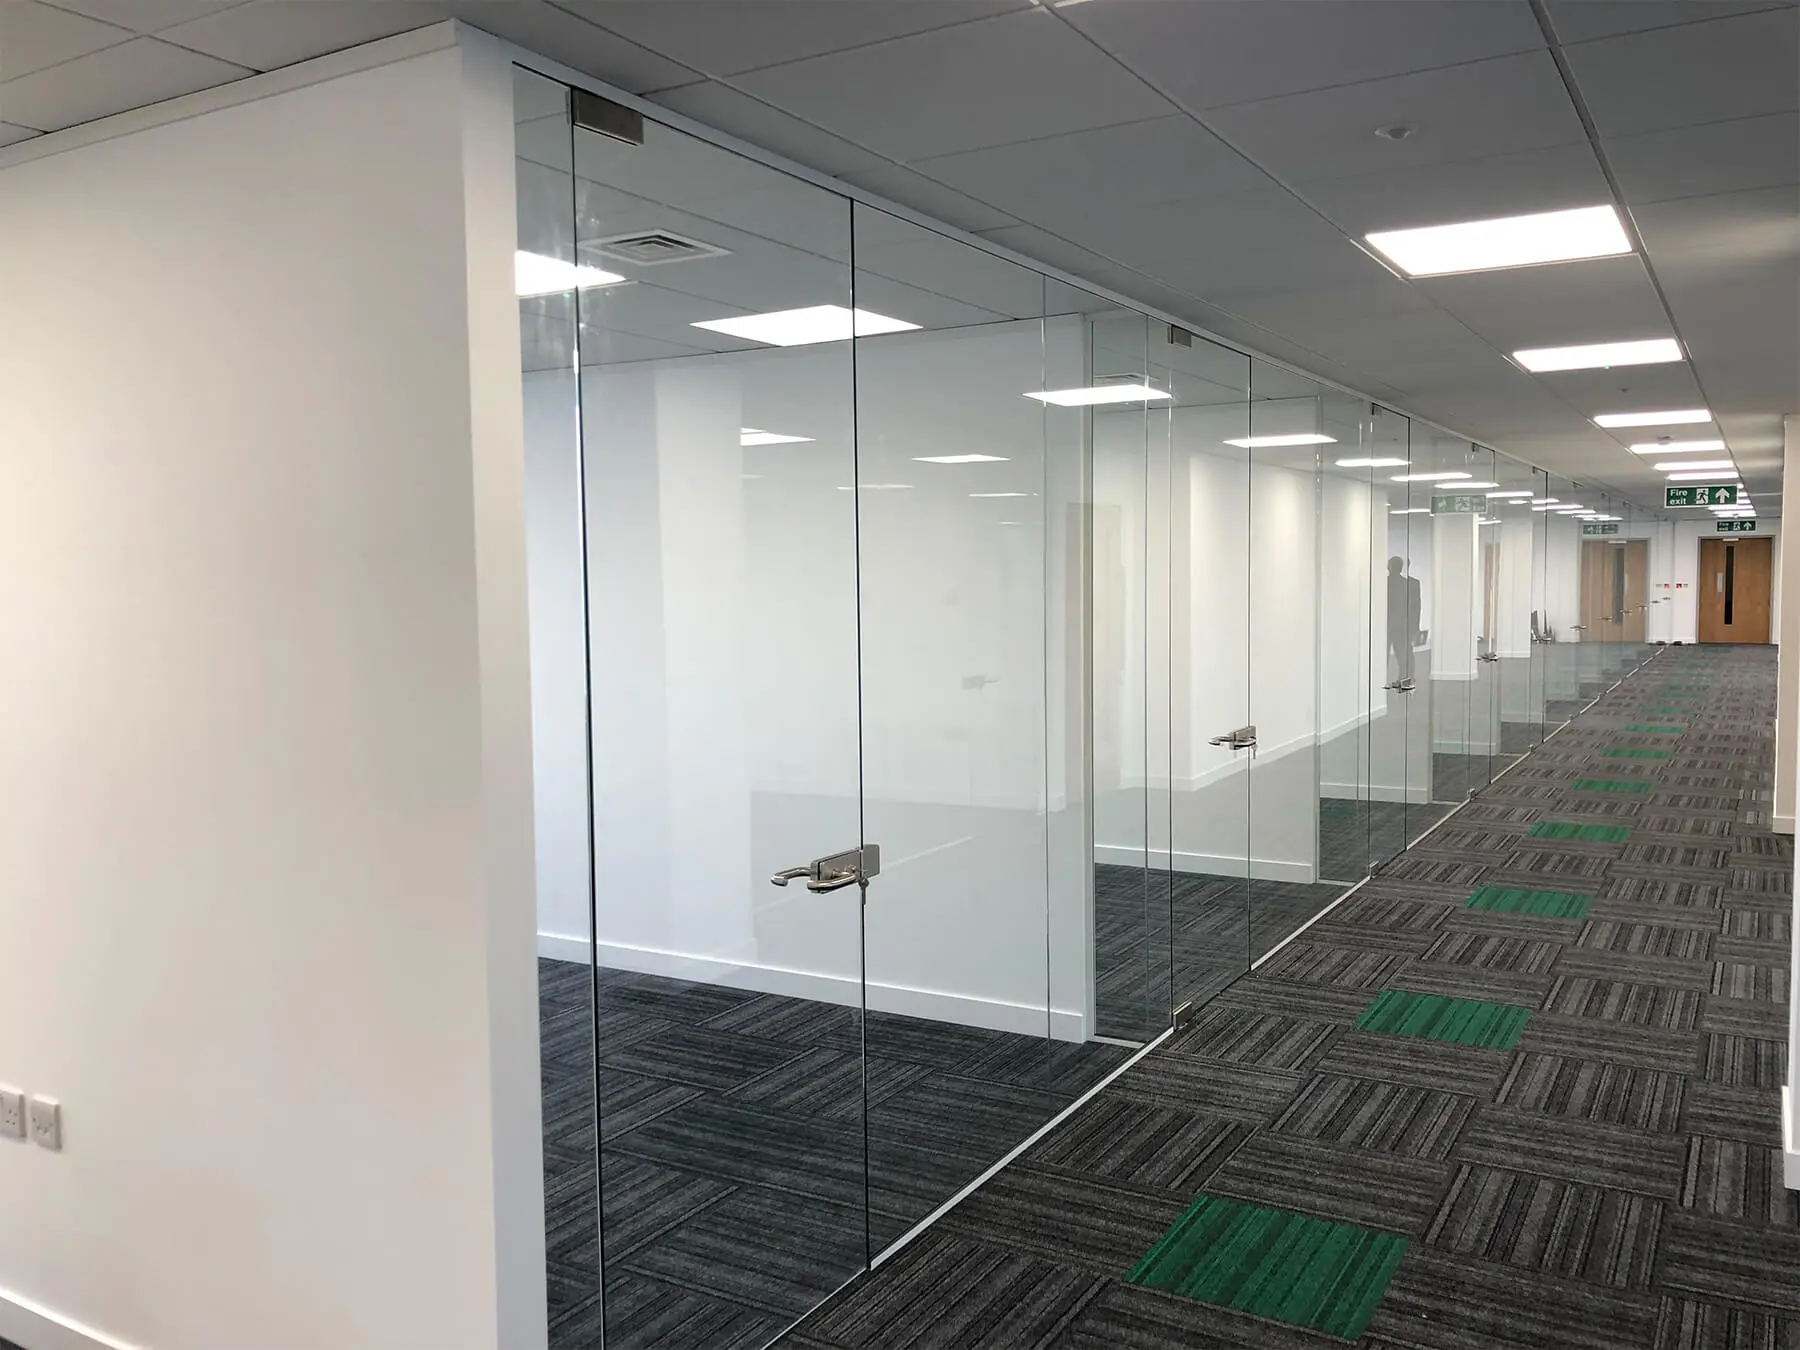 Single glazed frameless glass doors in office